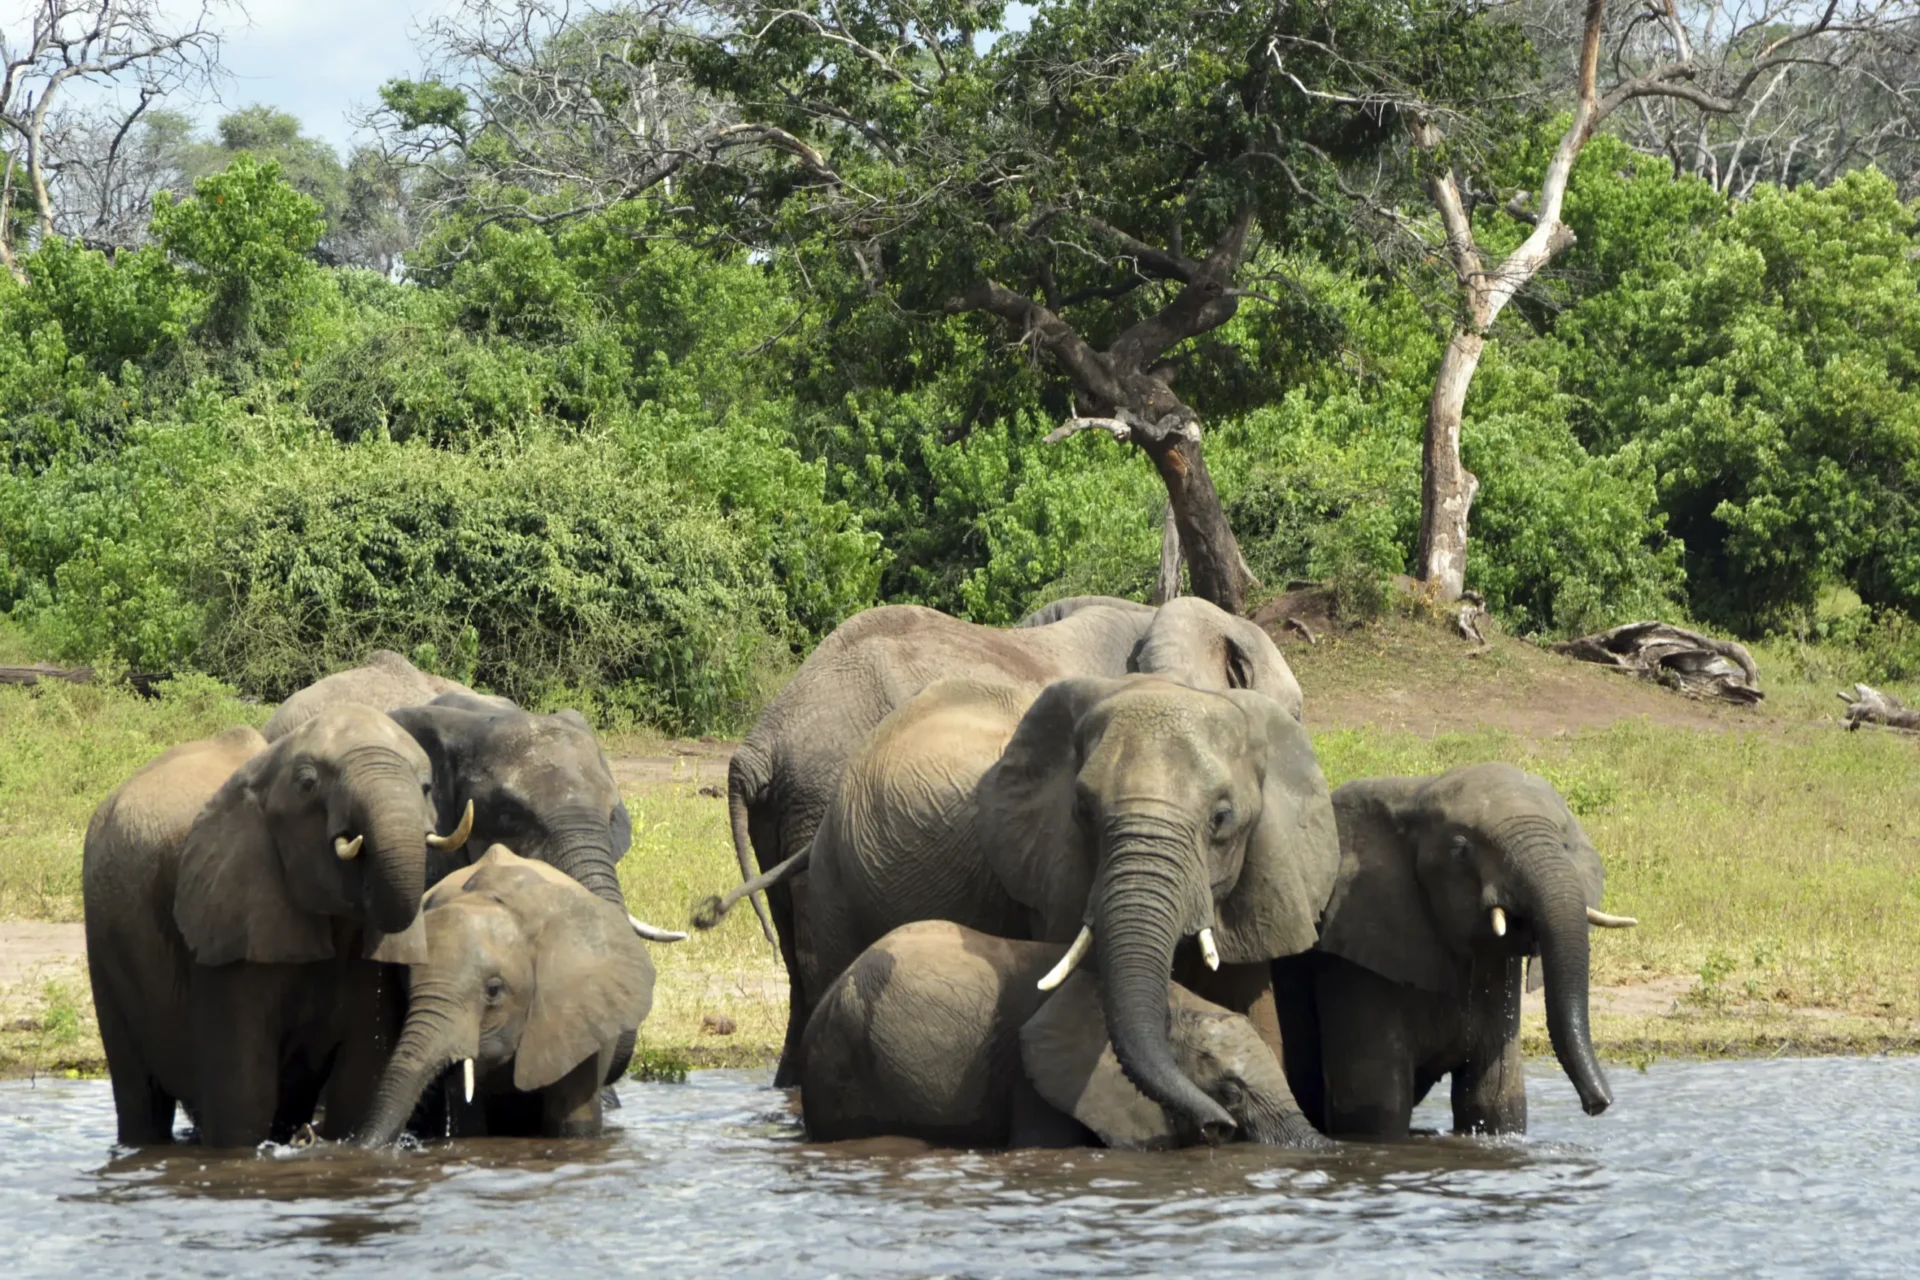 En el Okavango de África, la extracción de petróleo perturba a los lugareños y la naturaleza